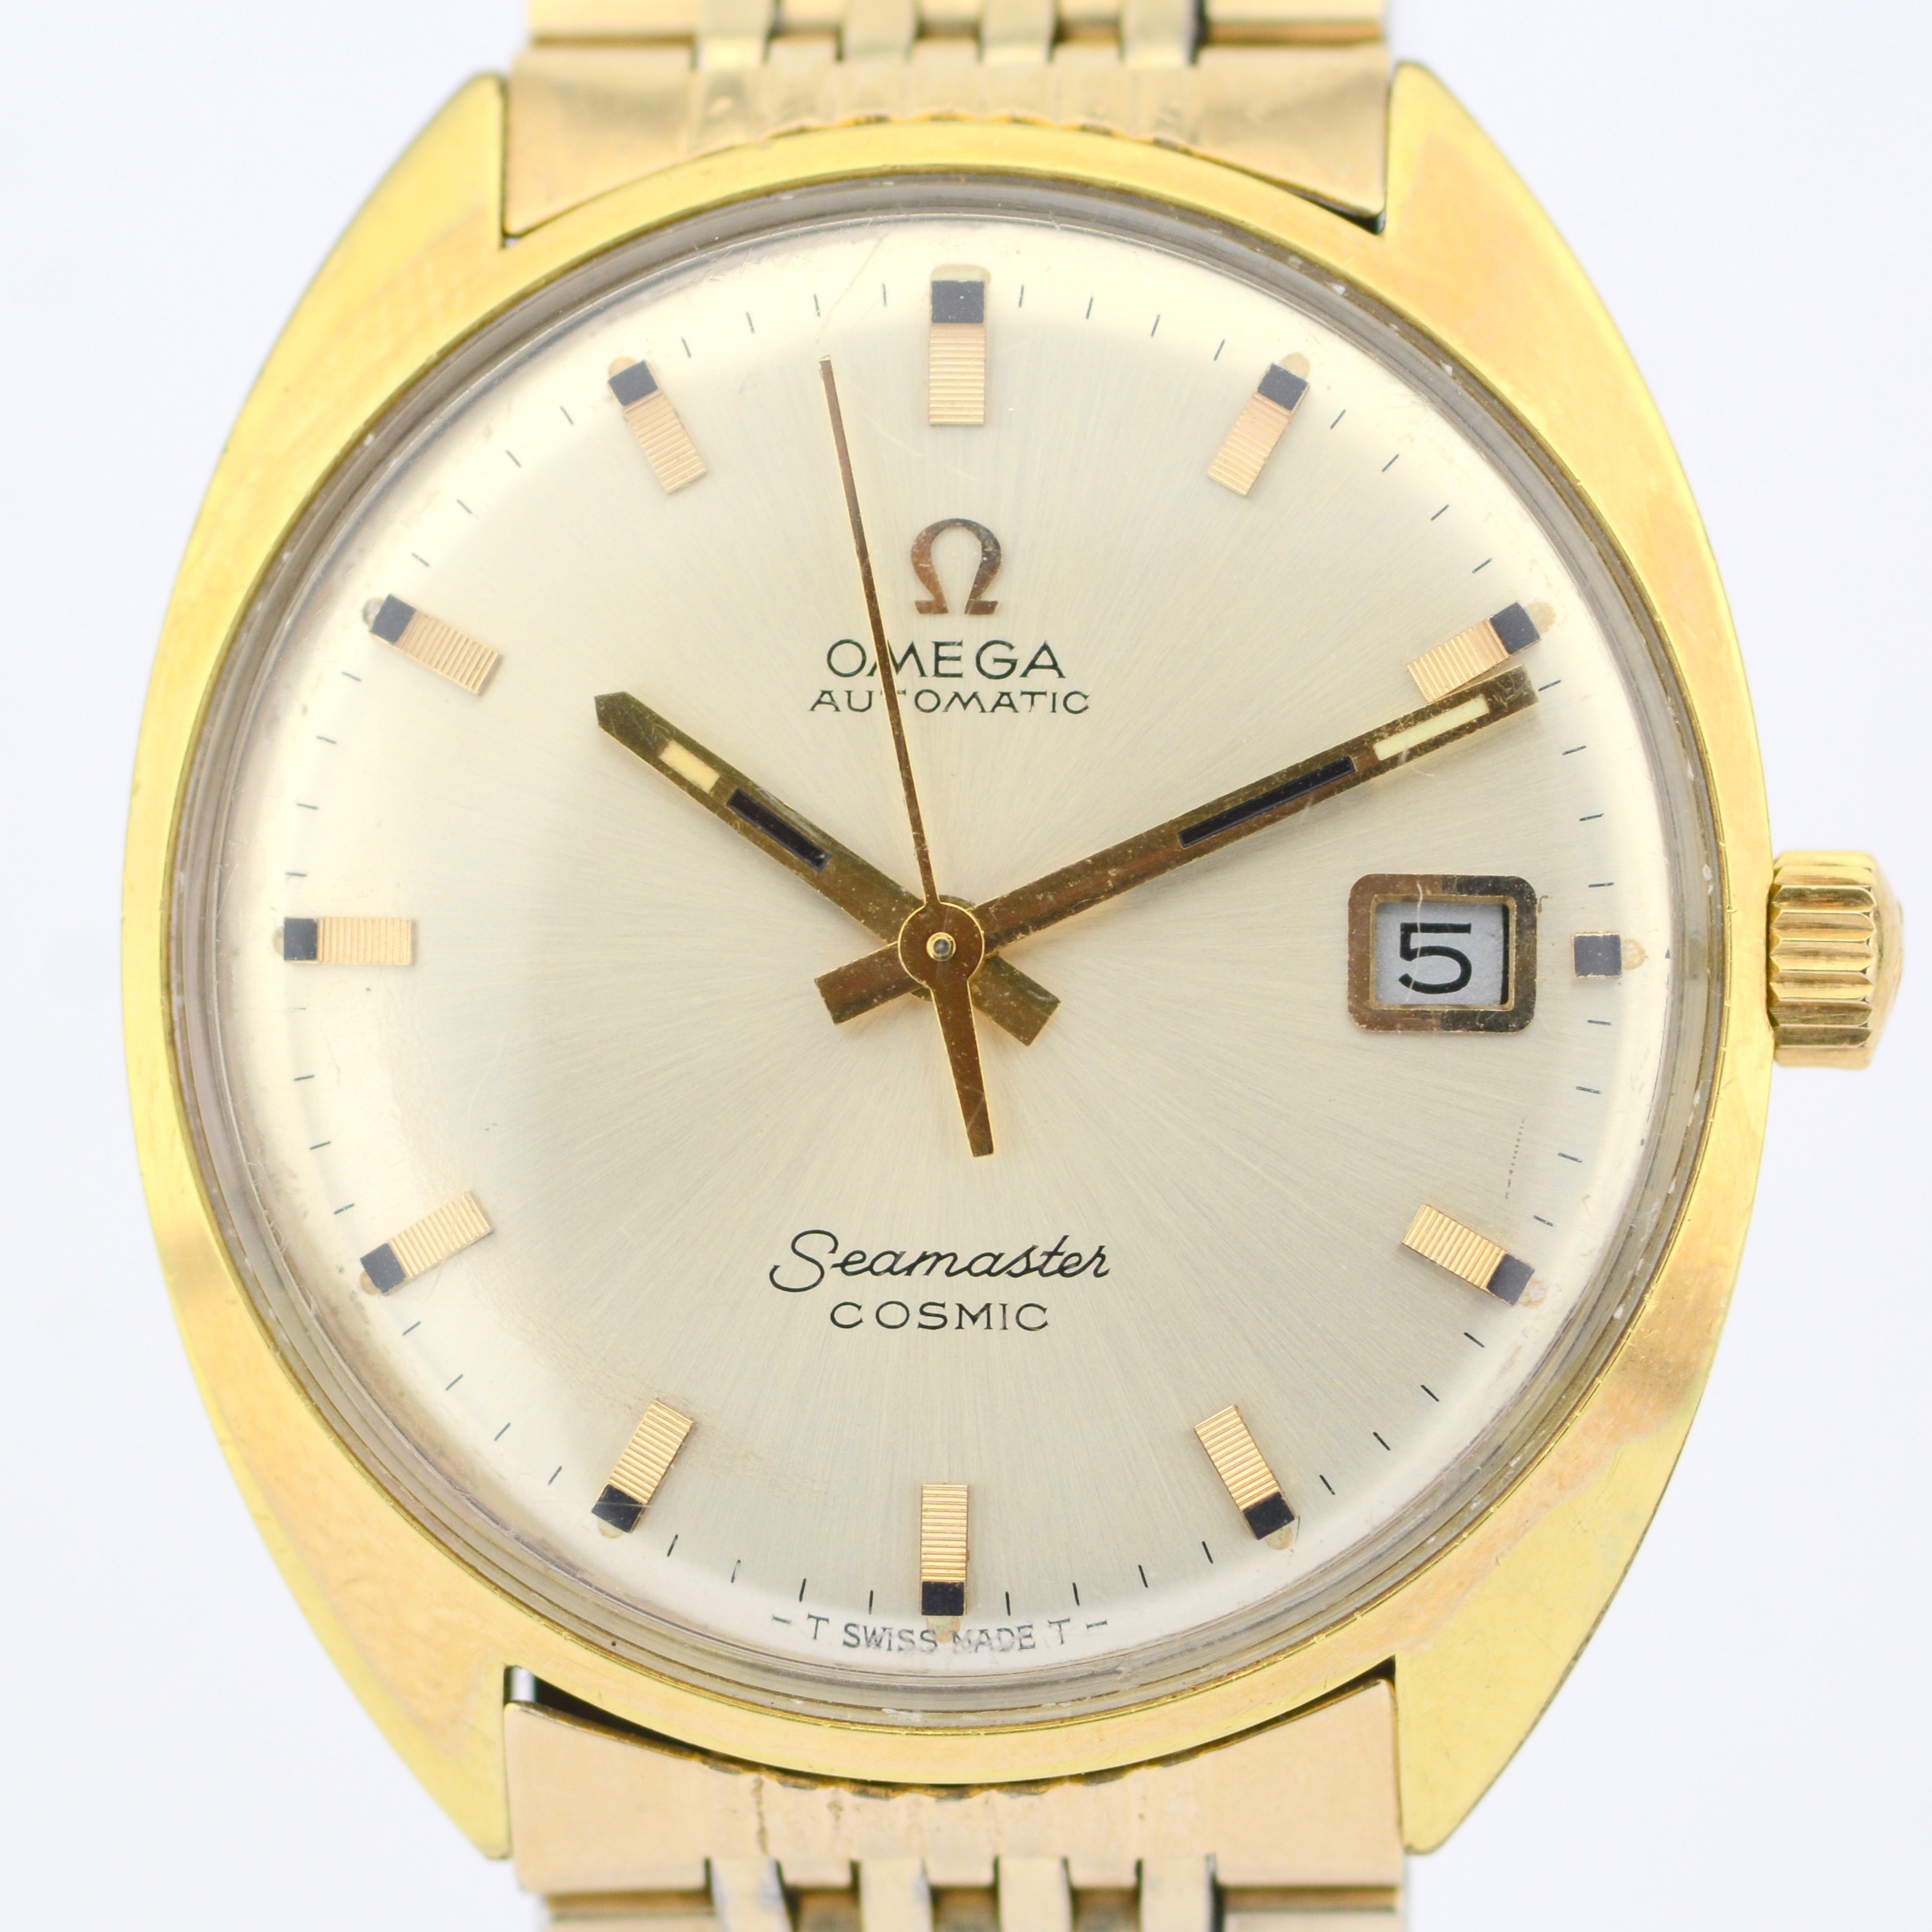 Omega / Seamaster Cosmic Date - Gentlmen's Gold/Steel Wrist Watch